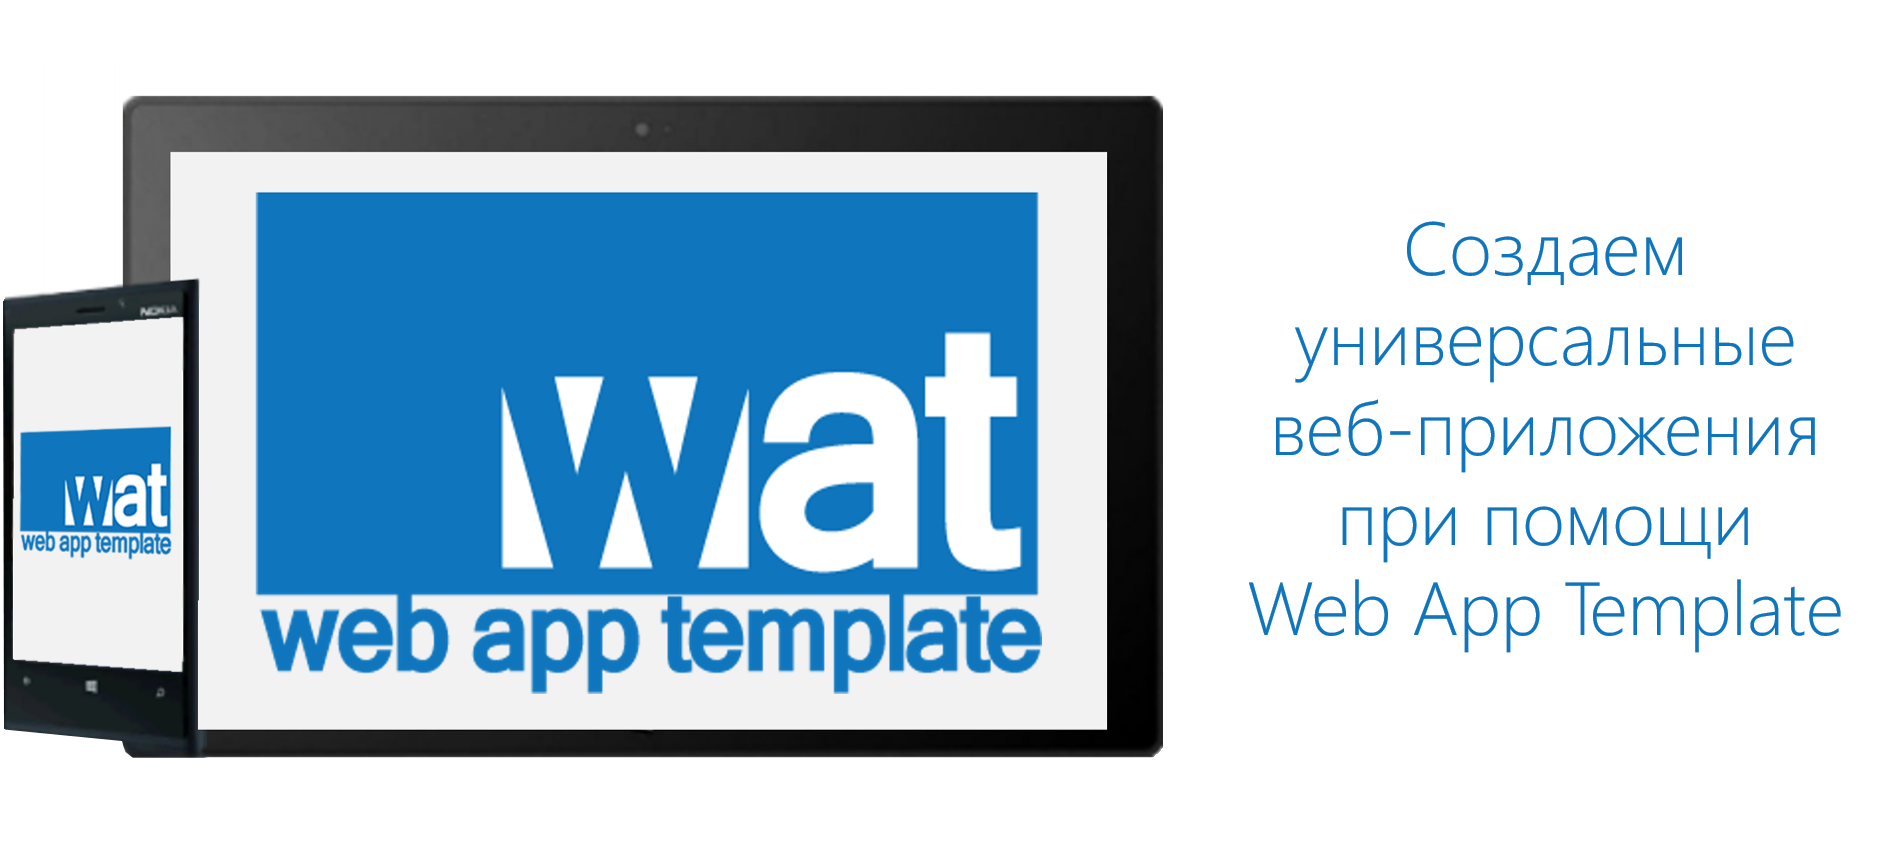 Создание универсальных веб-приложений при помощи Web App Template - 1